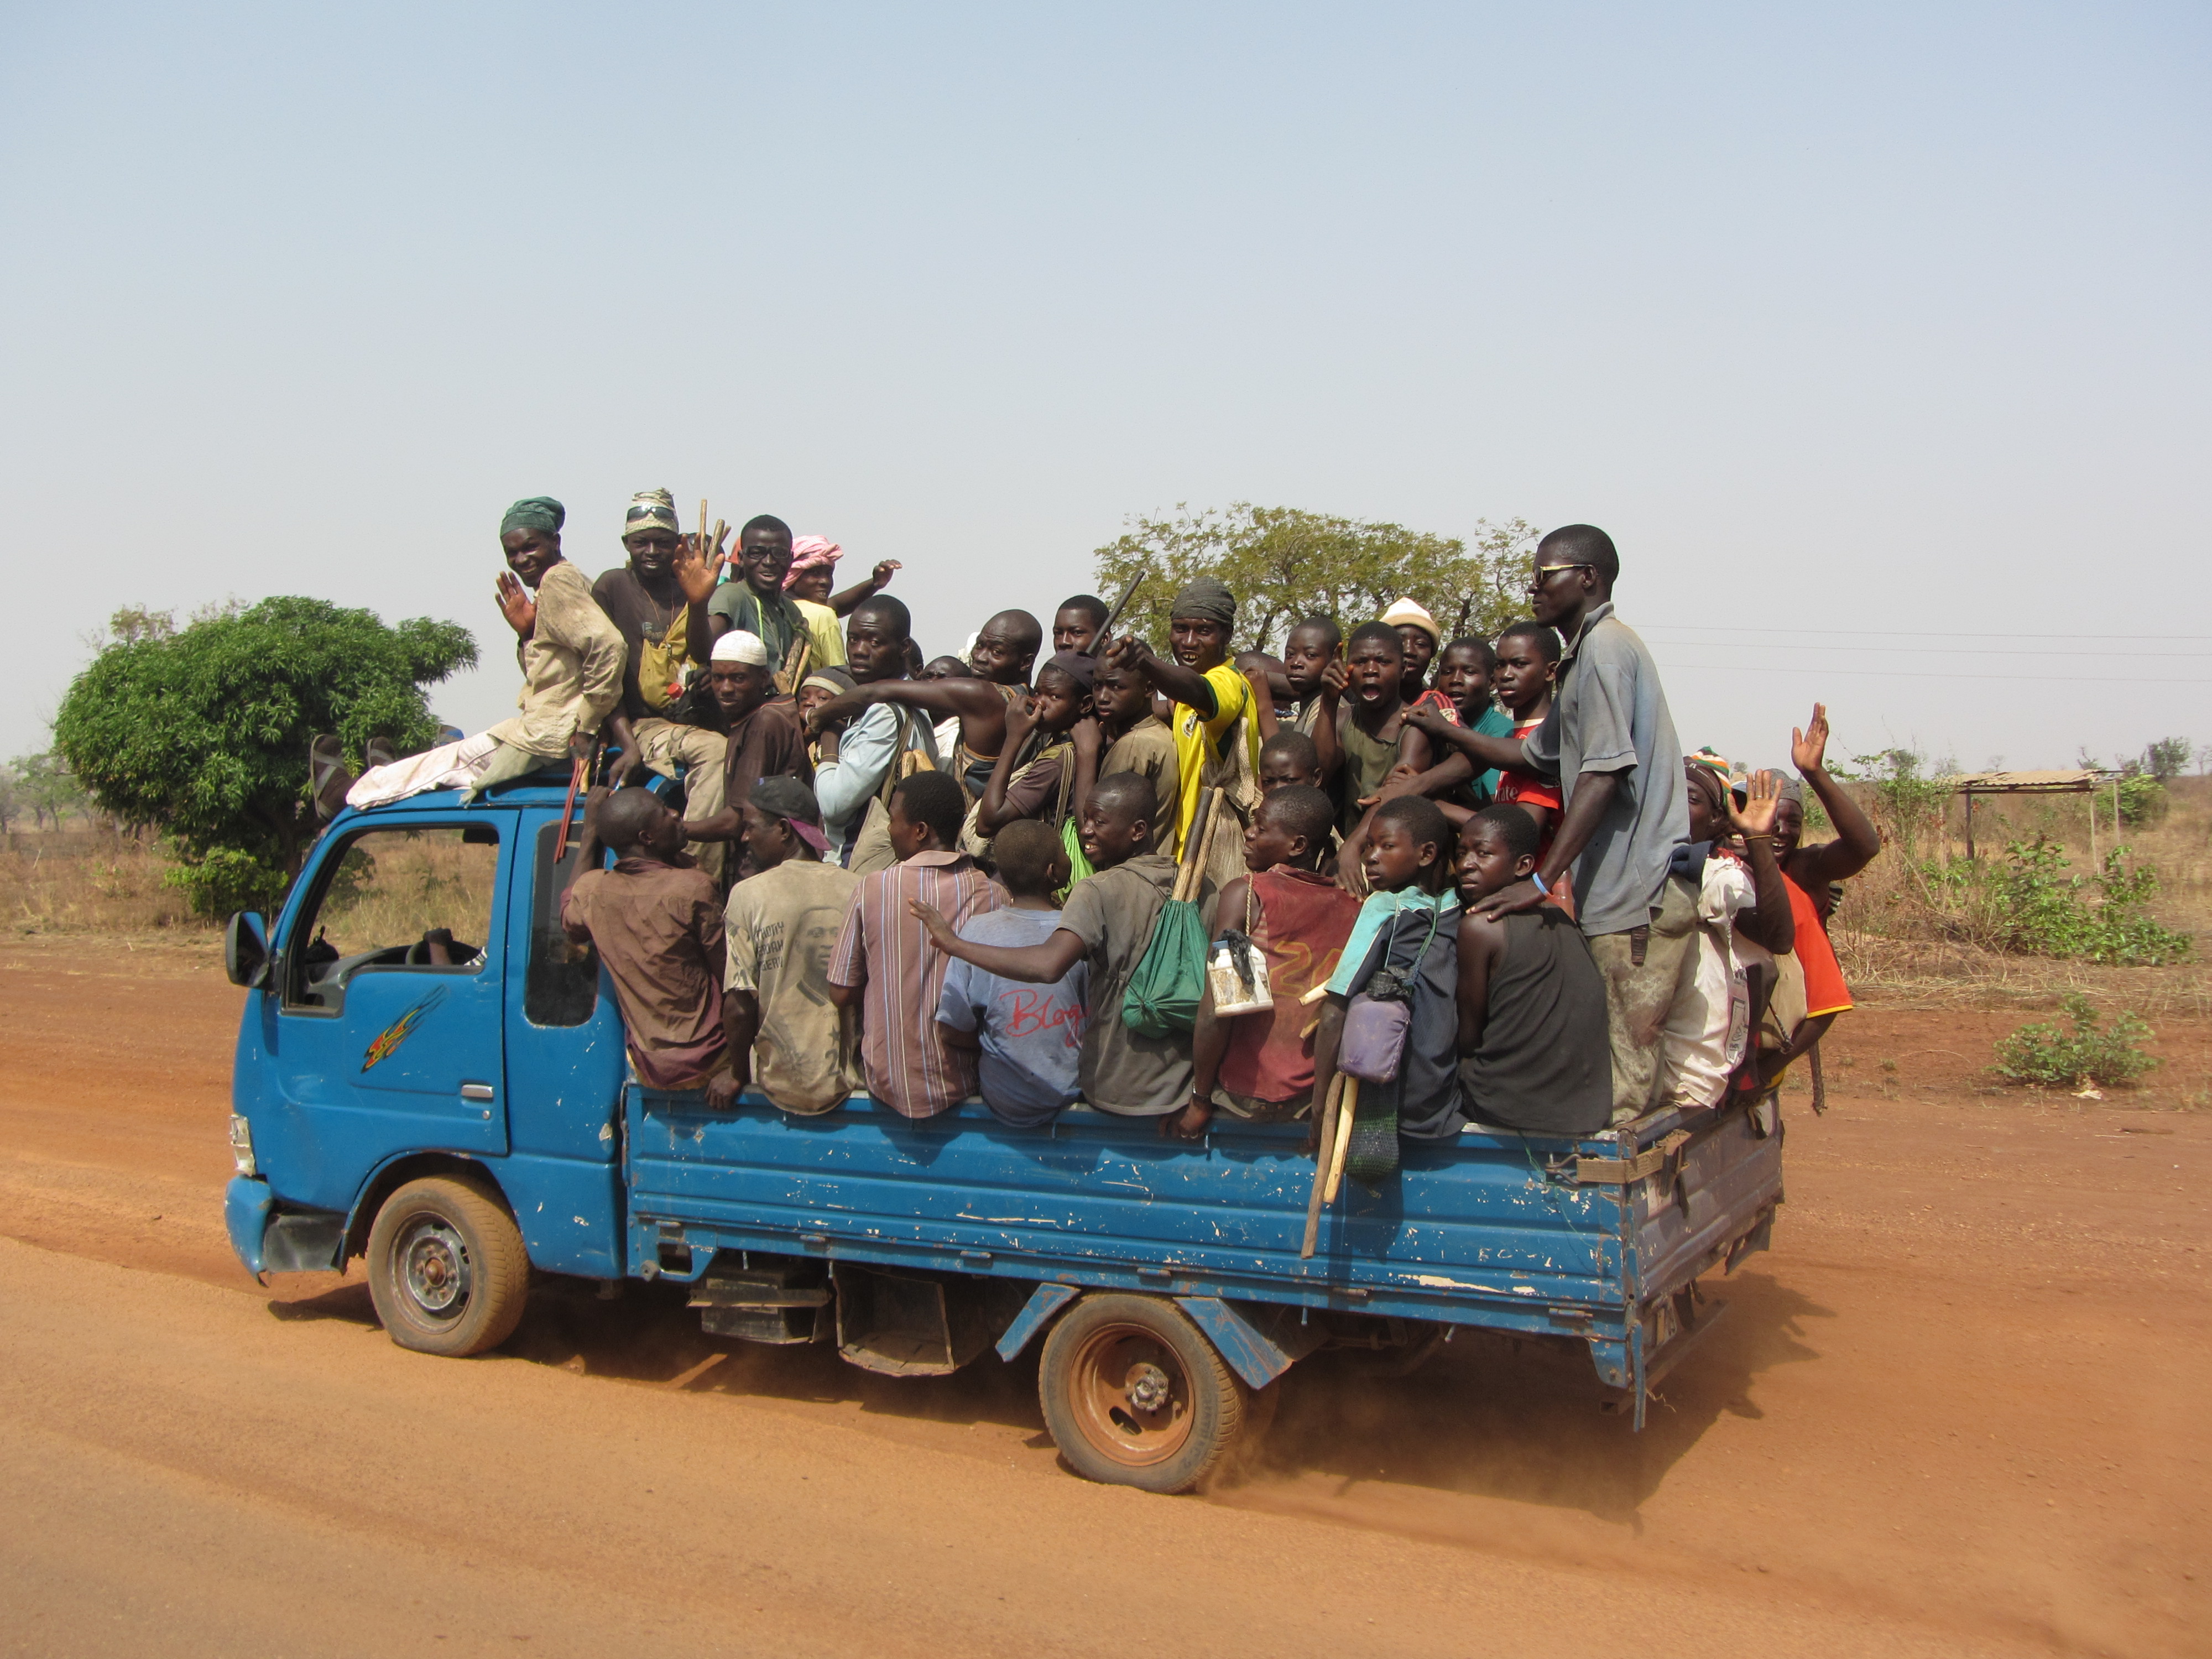 Перевозка людей в грузовом автомобиле. Пассажиры в кузове грузовика. Гана транспорт. Экономика Ганы транспорт.